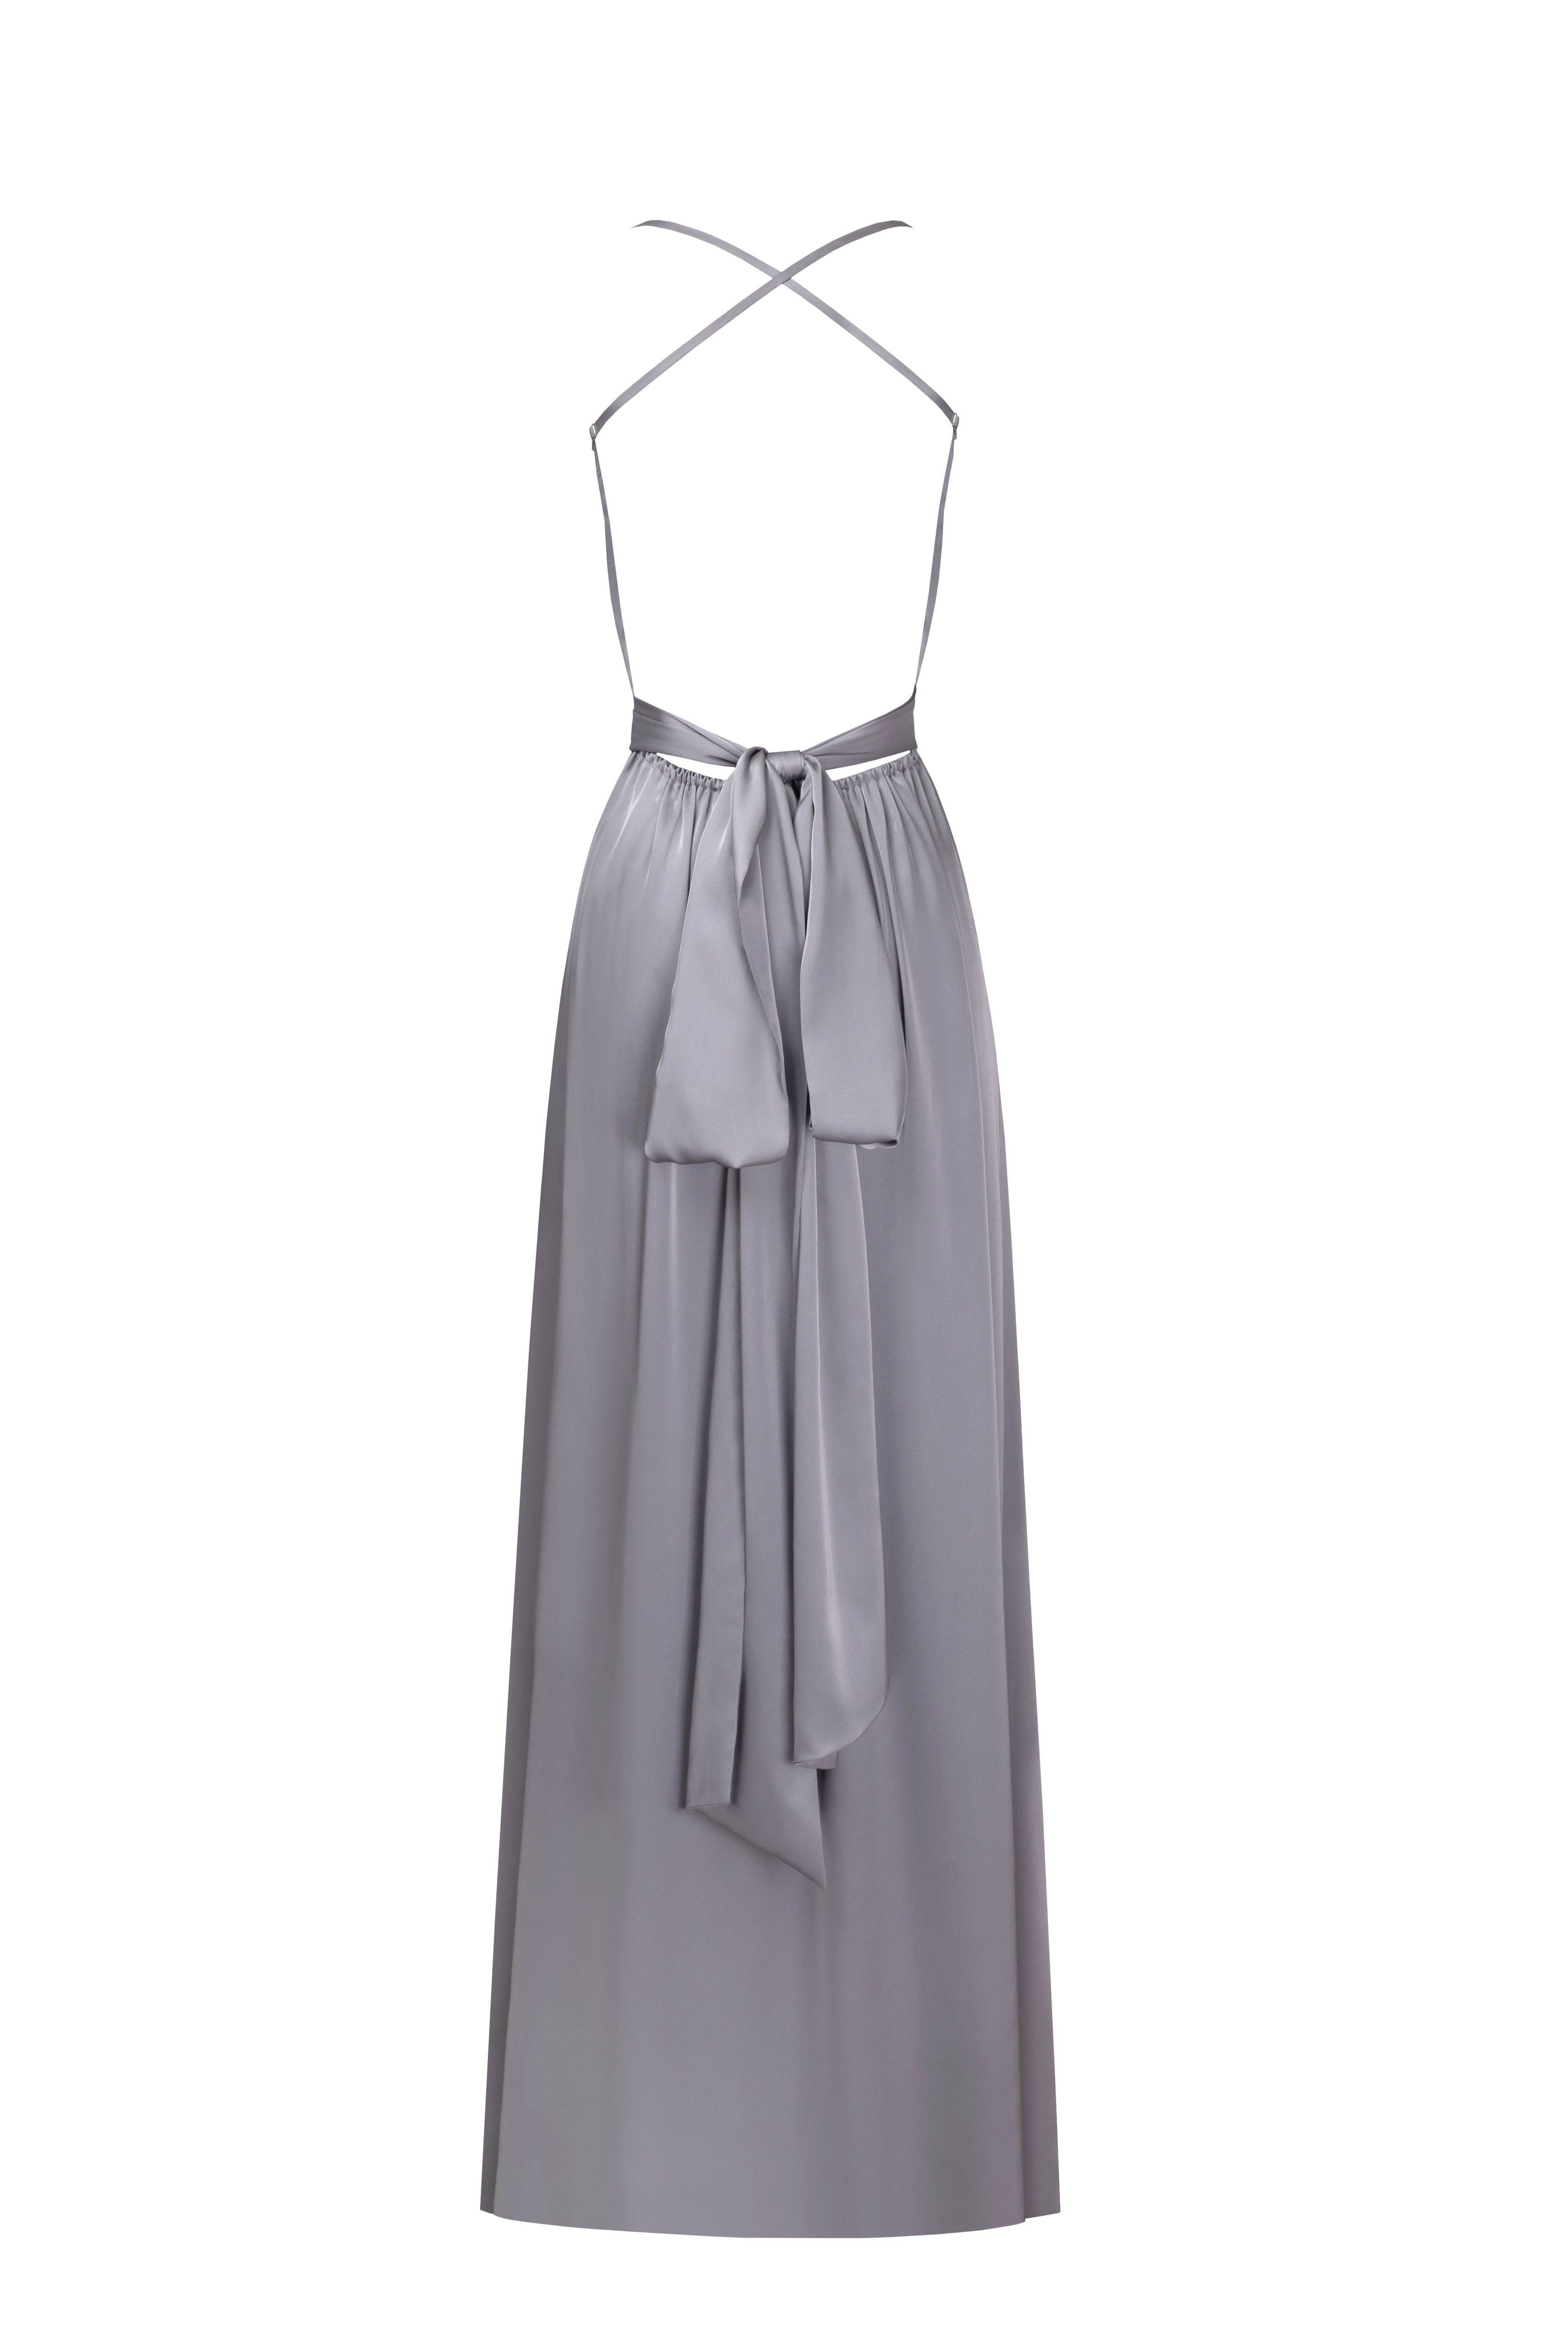 Light gray slip dresses